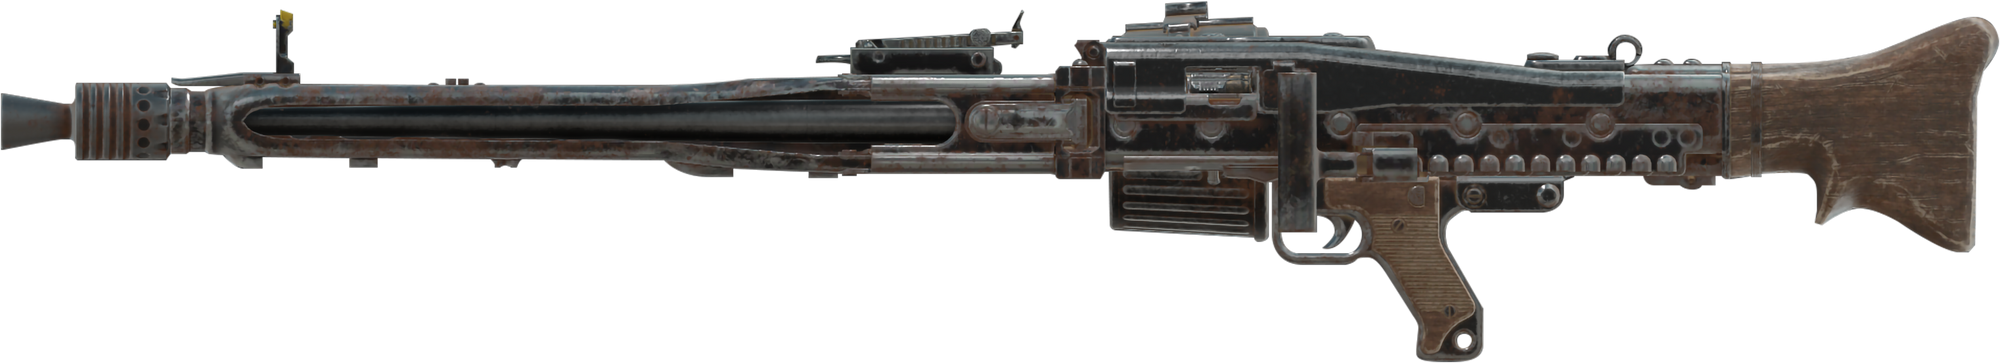 Fallout 4 пкм пулемет фото 49